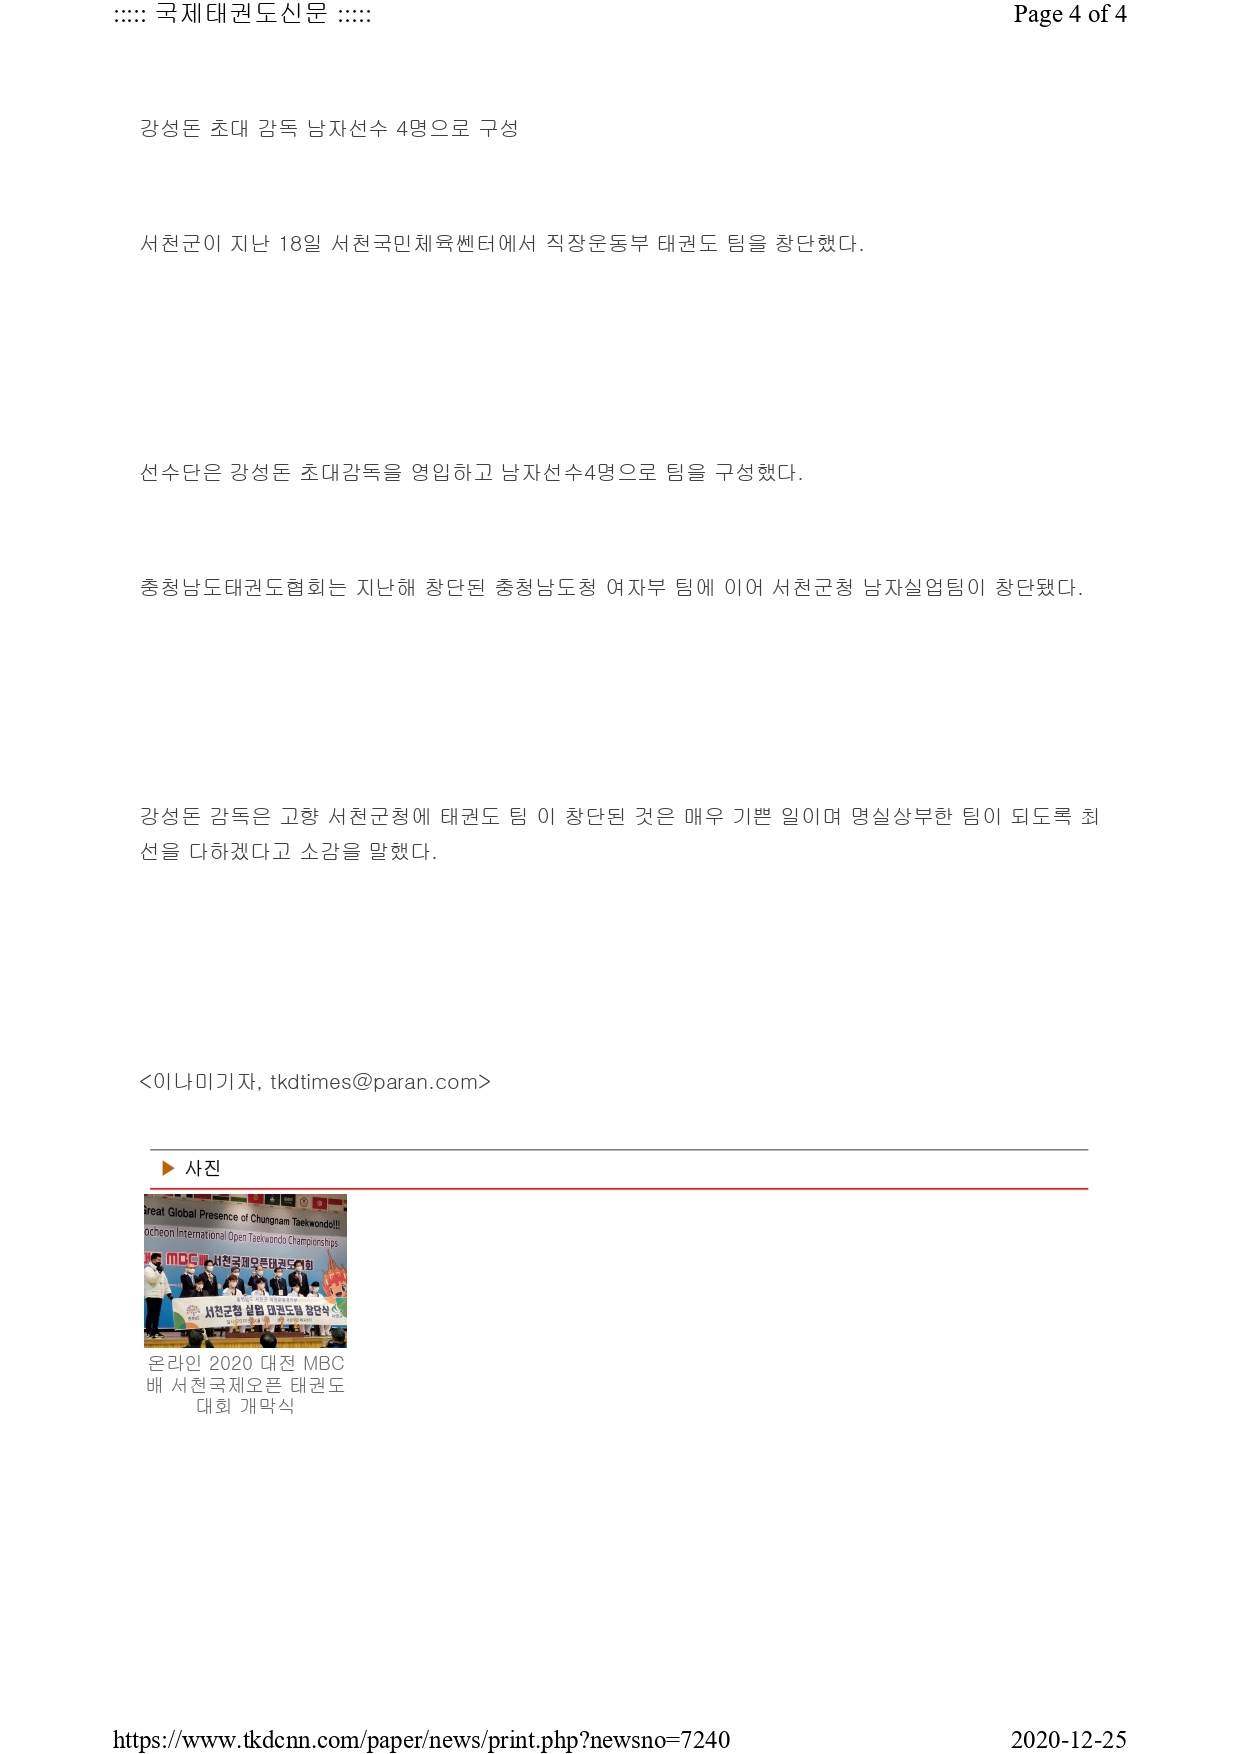 [국제태권도신문] 온라인 2020 대전MBC배 국제오픈태권도대회 성료!_page-0004.jpg